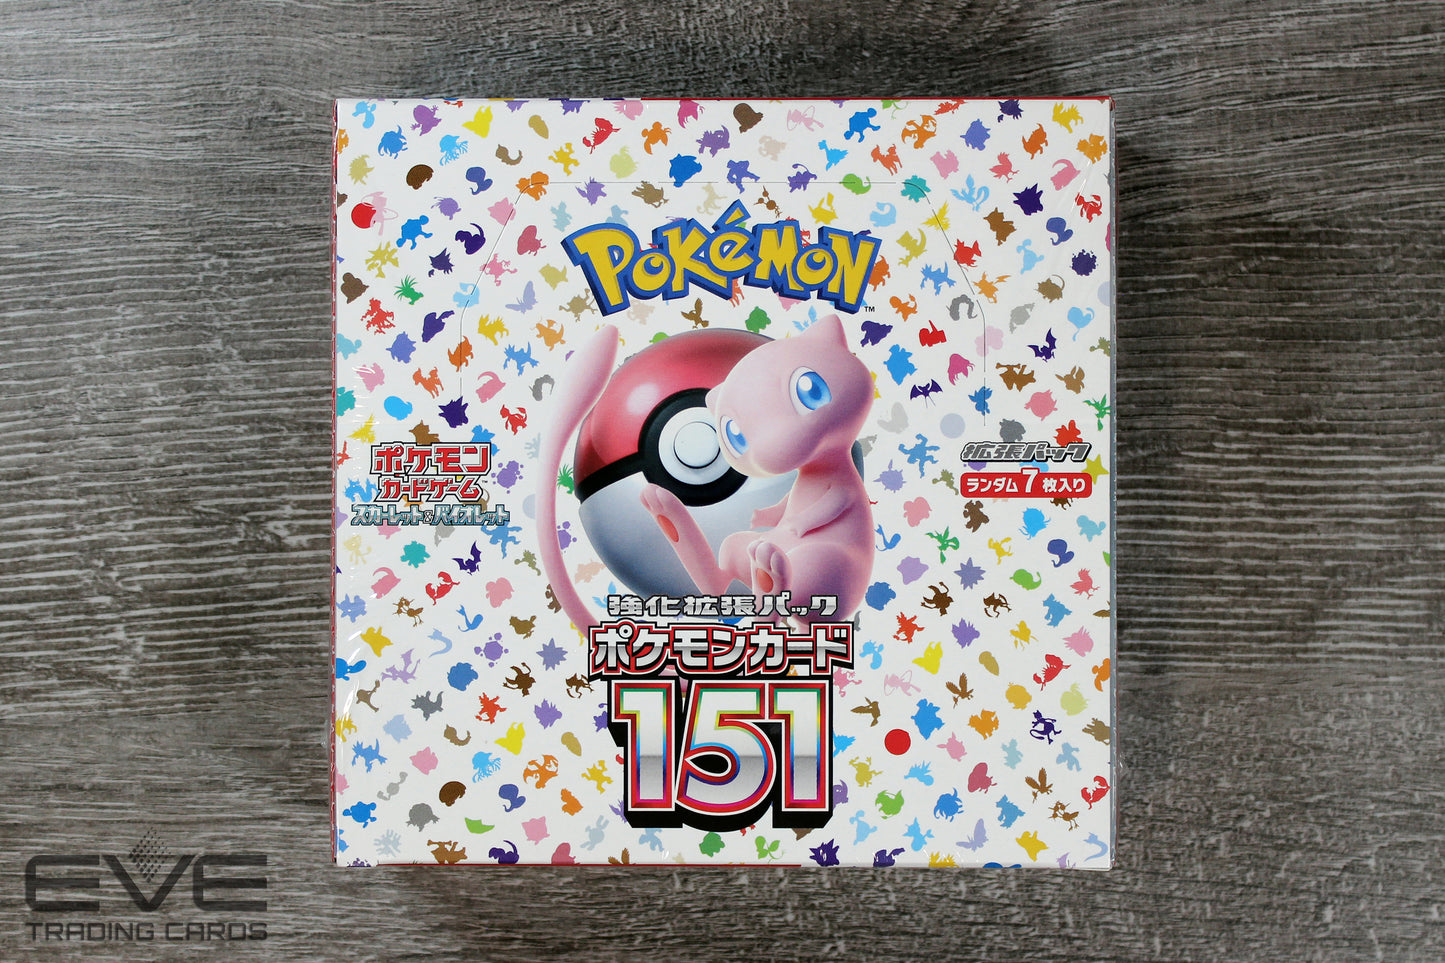 Pokémon TCG: Scarlet & Violet 151 Expansion Booster Box sv2a (Japanese)